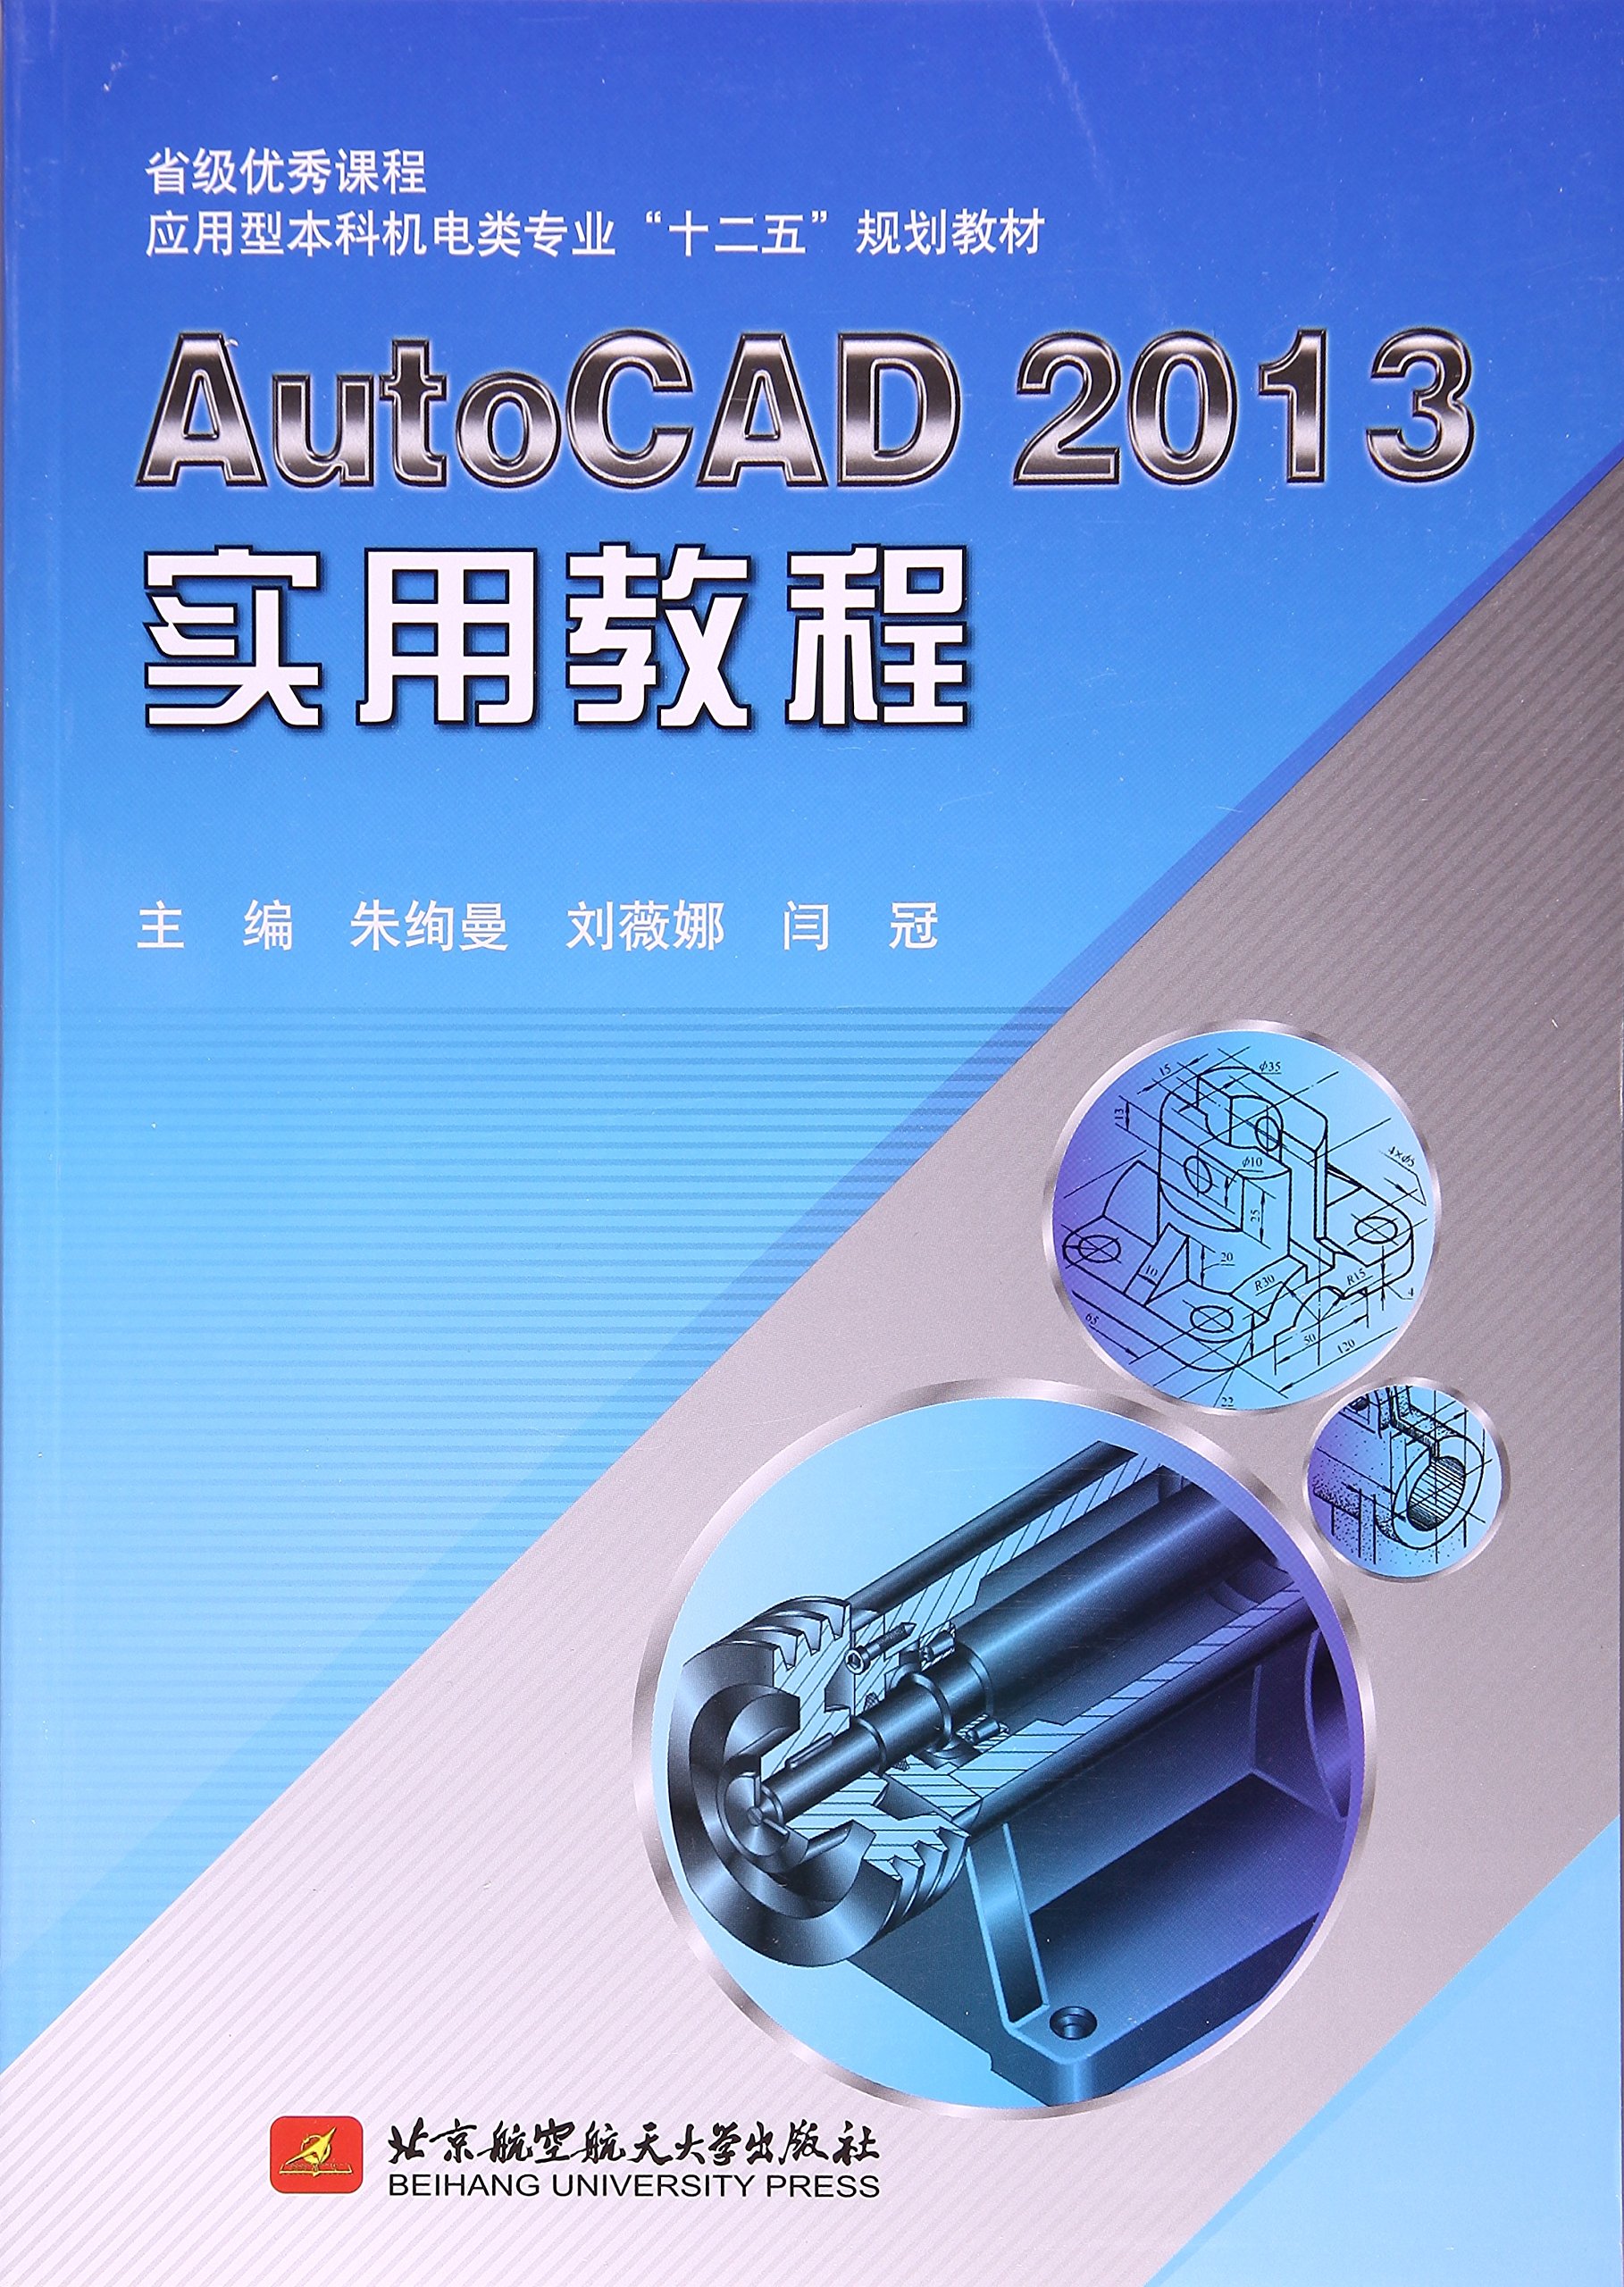 AutoCAD 2013實用教程